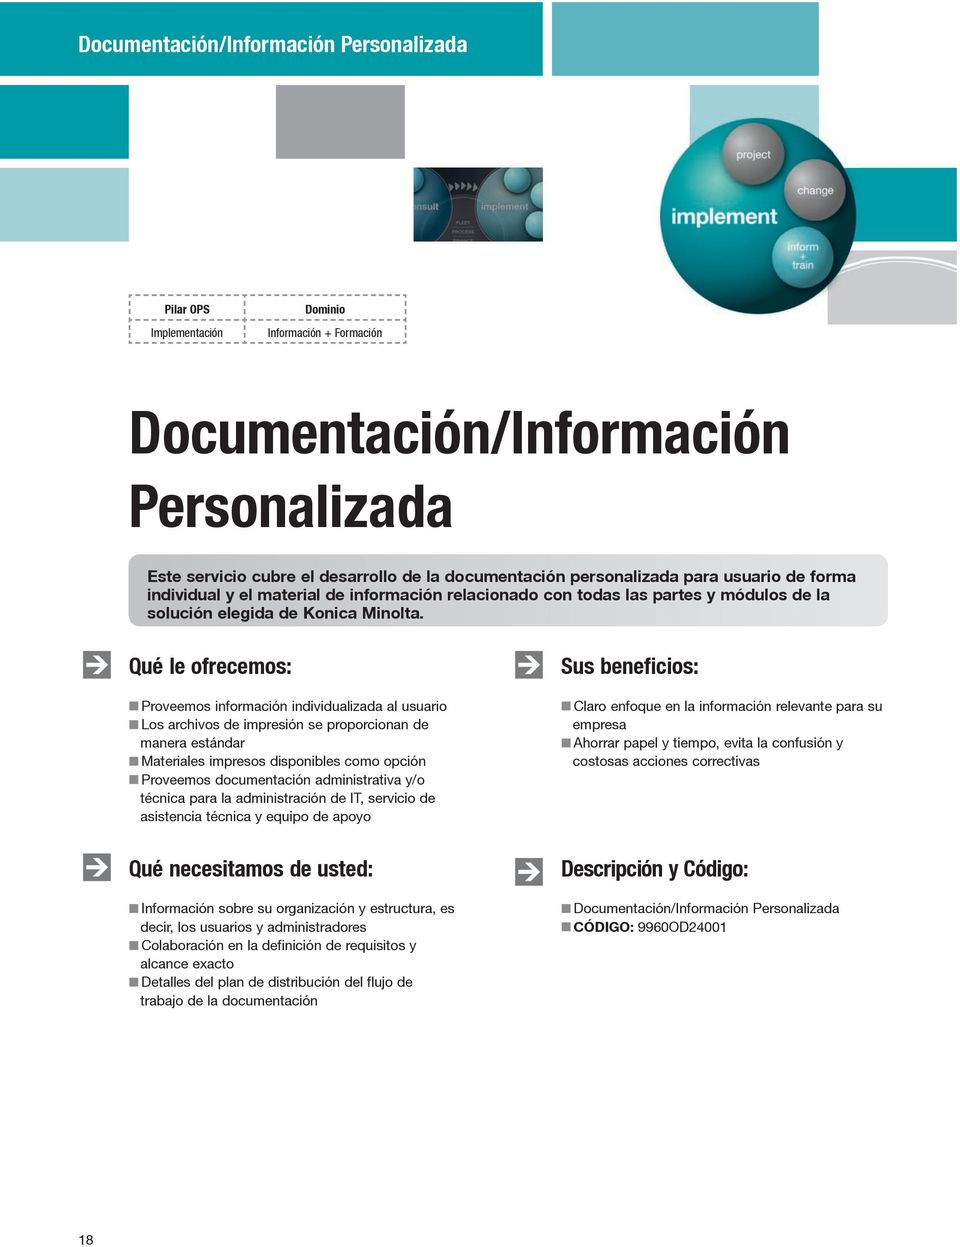 Proveemos información individualizada al usuario Los archivos de impresión se proporcionan de manera estándar Materiales impresos disponibles como opción Proveemos documentación administrativa y/o